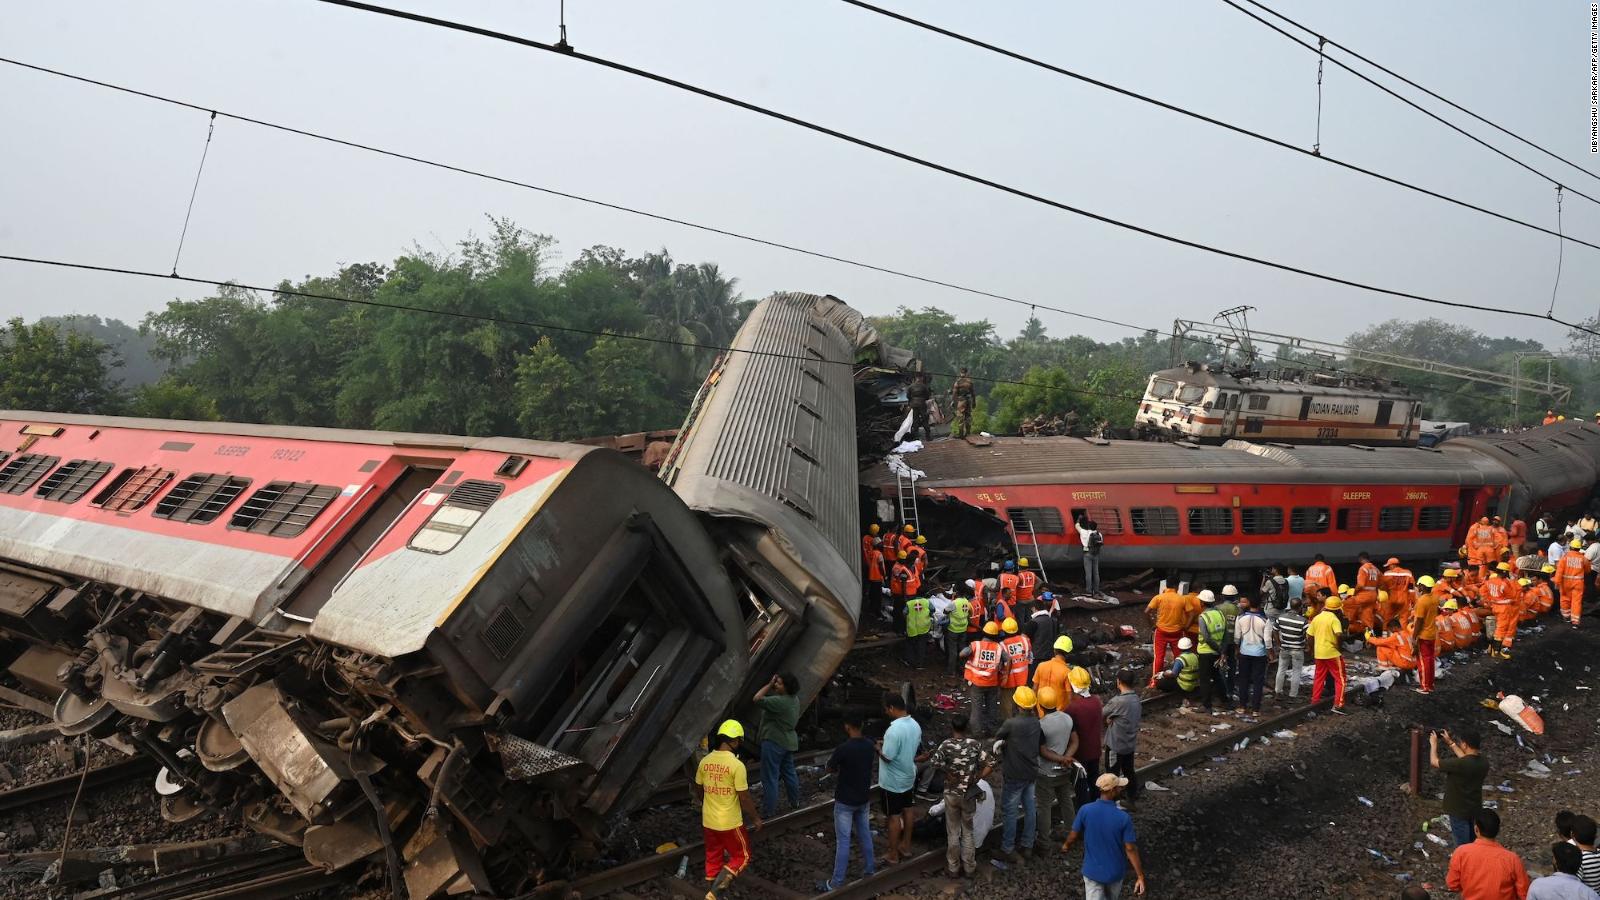 Identificadas la causa y las personas responsables del accidente mortal de tren en la India, asegura el Ministro de Ferrocarriles